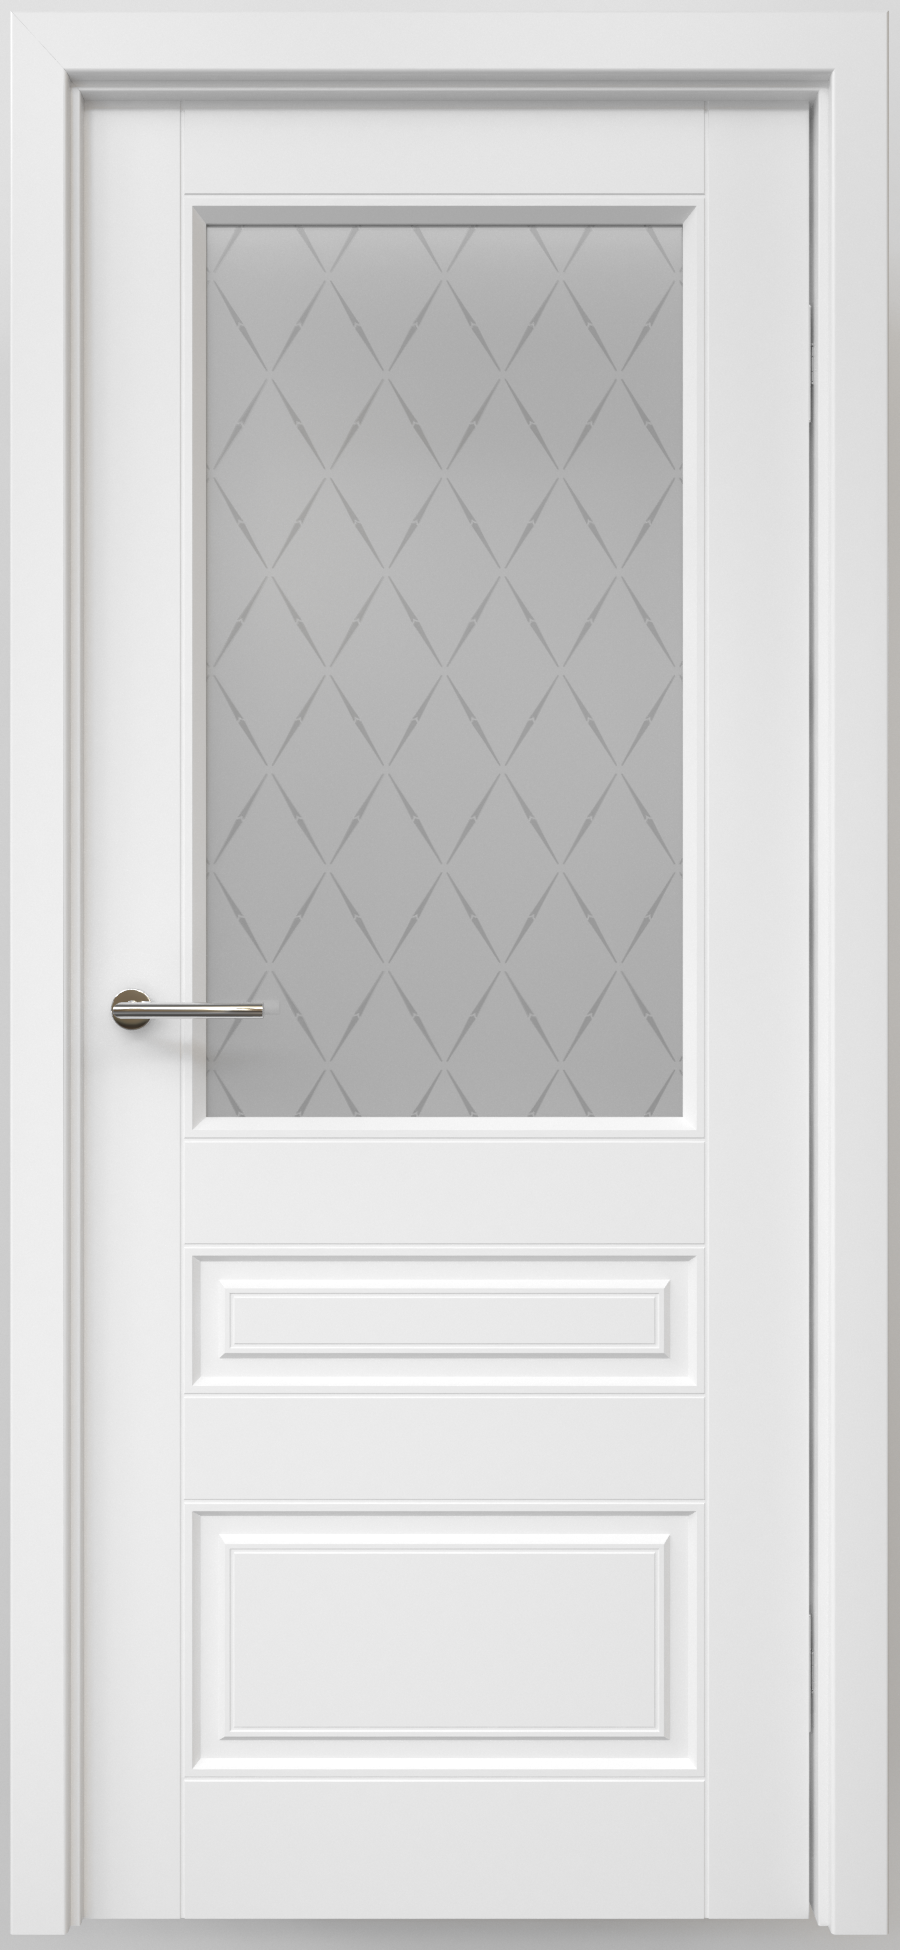 Полотно дверное остекленное Эмаль Классика-3 ЛЕВОЕ 800 белый ст. мателюкс "Лорд мат" (защелка маг)